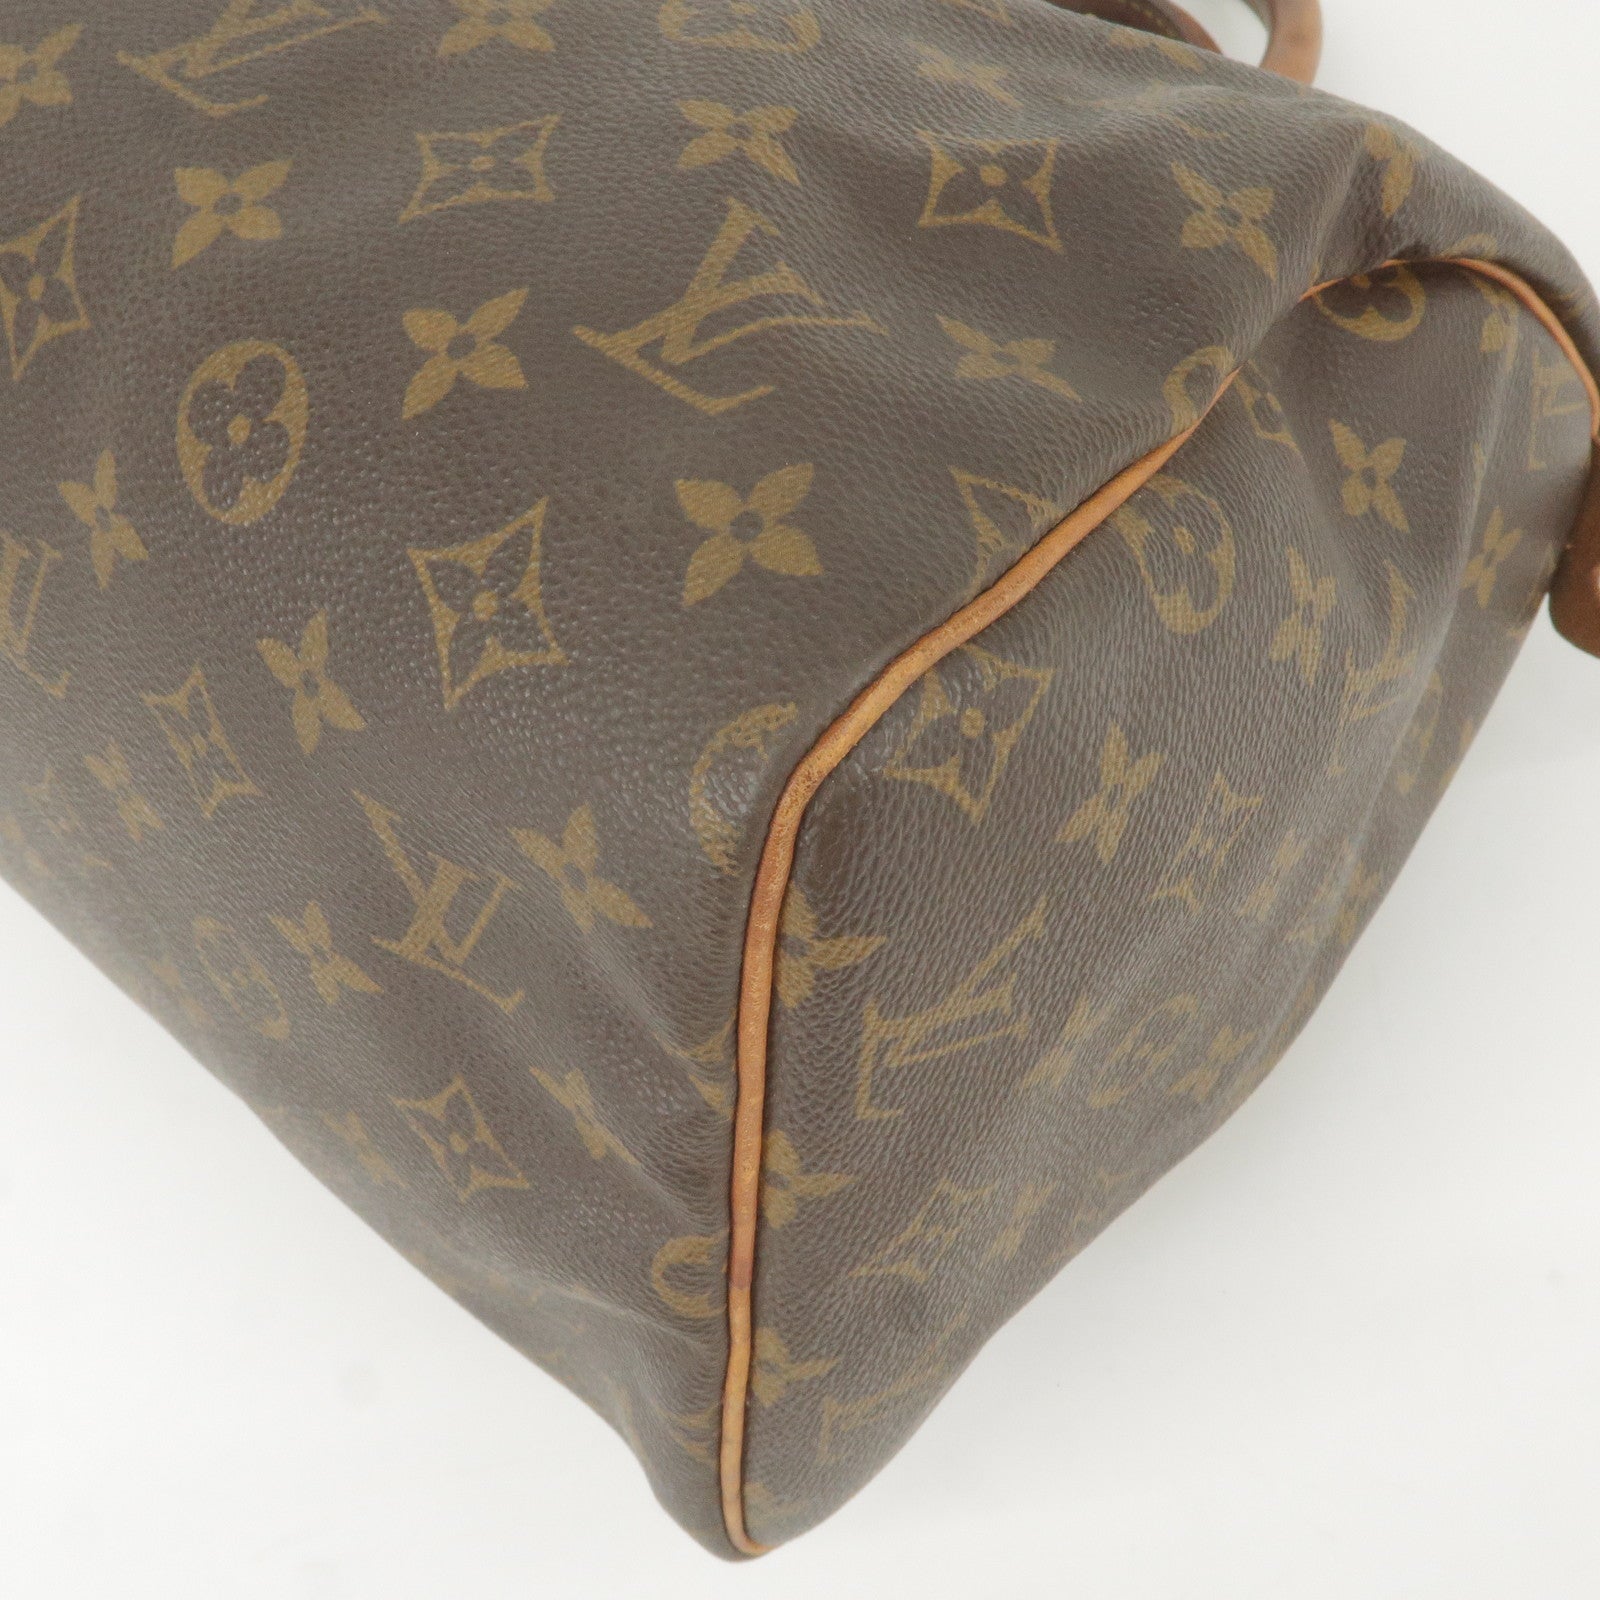 Louis Vuitton Stephen Sprouse Boston Bag Monogram